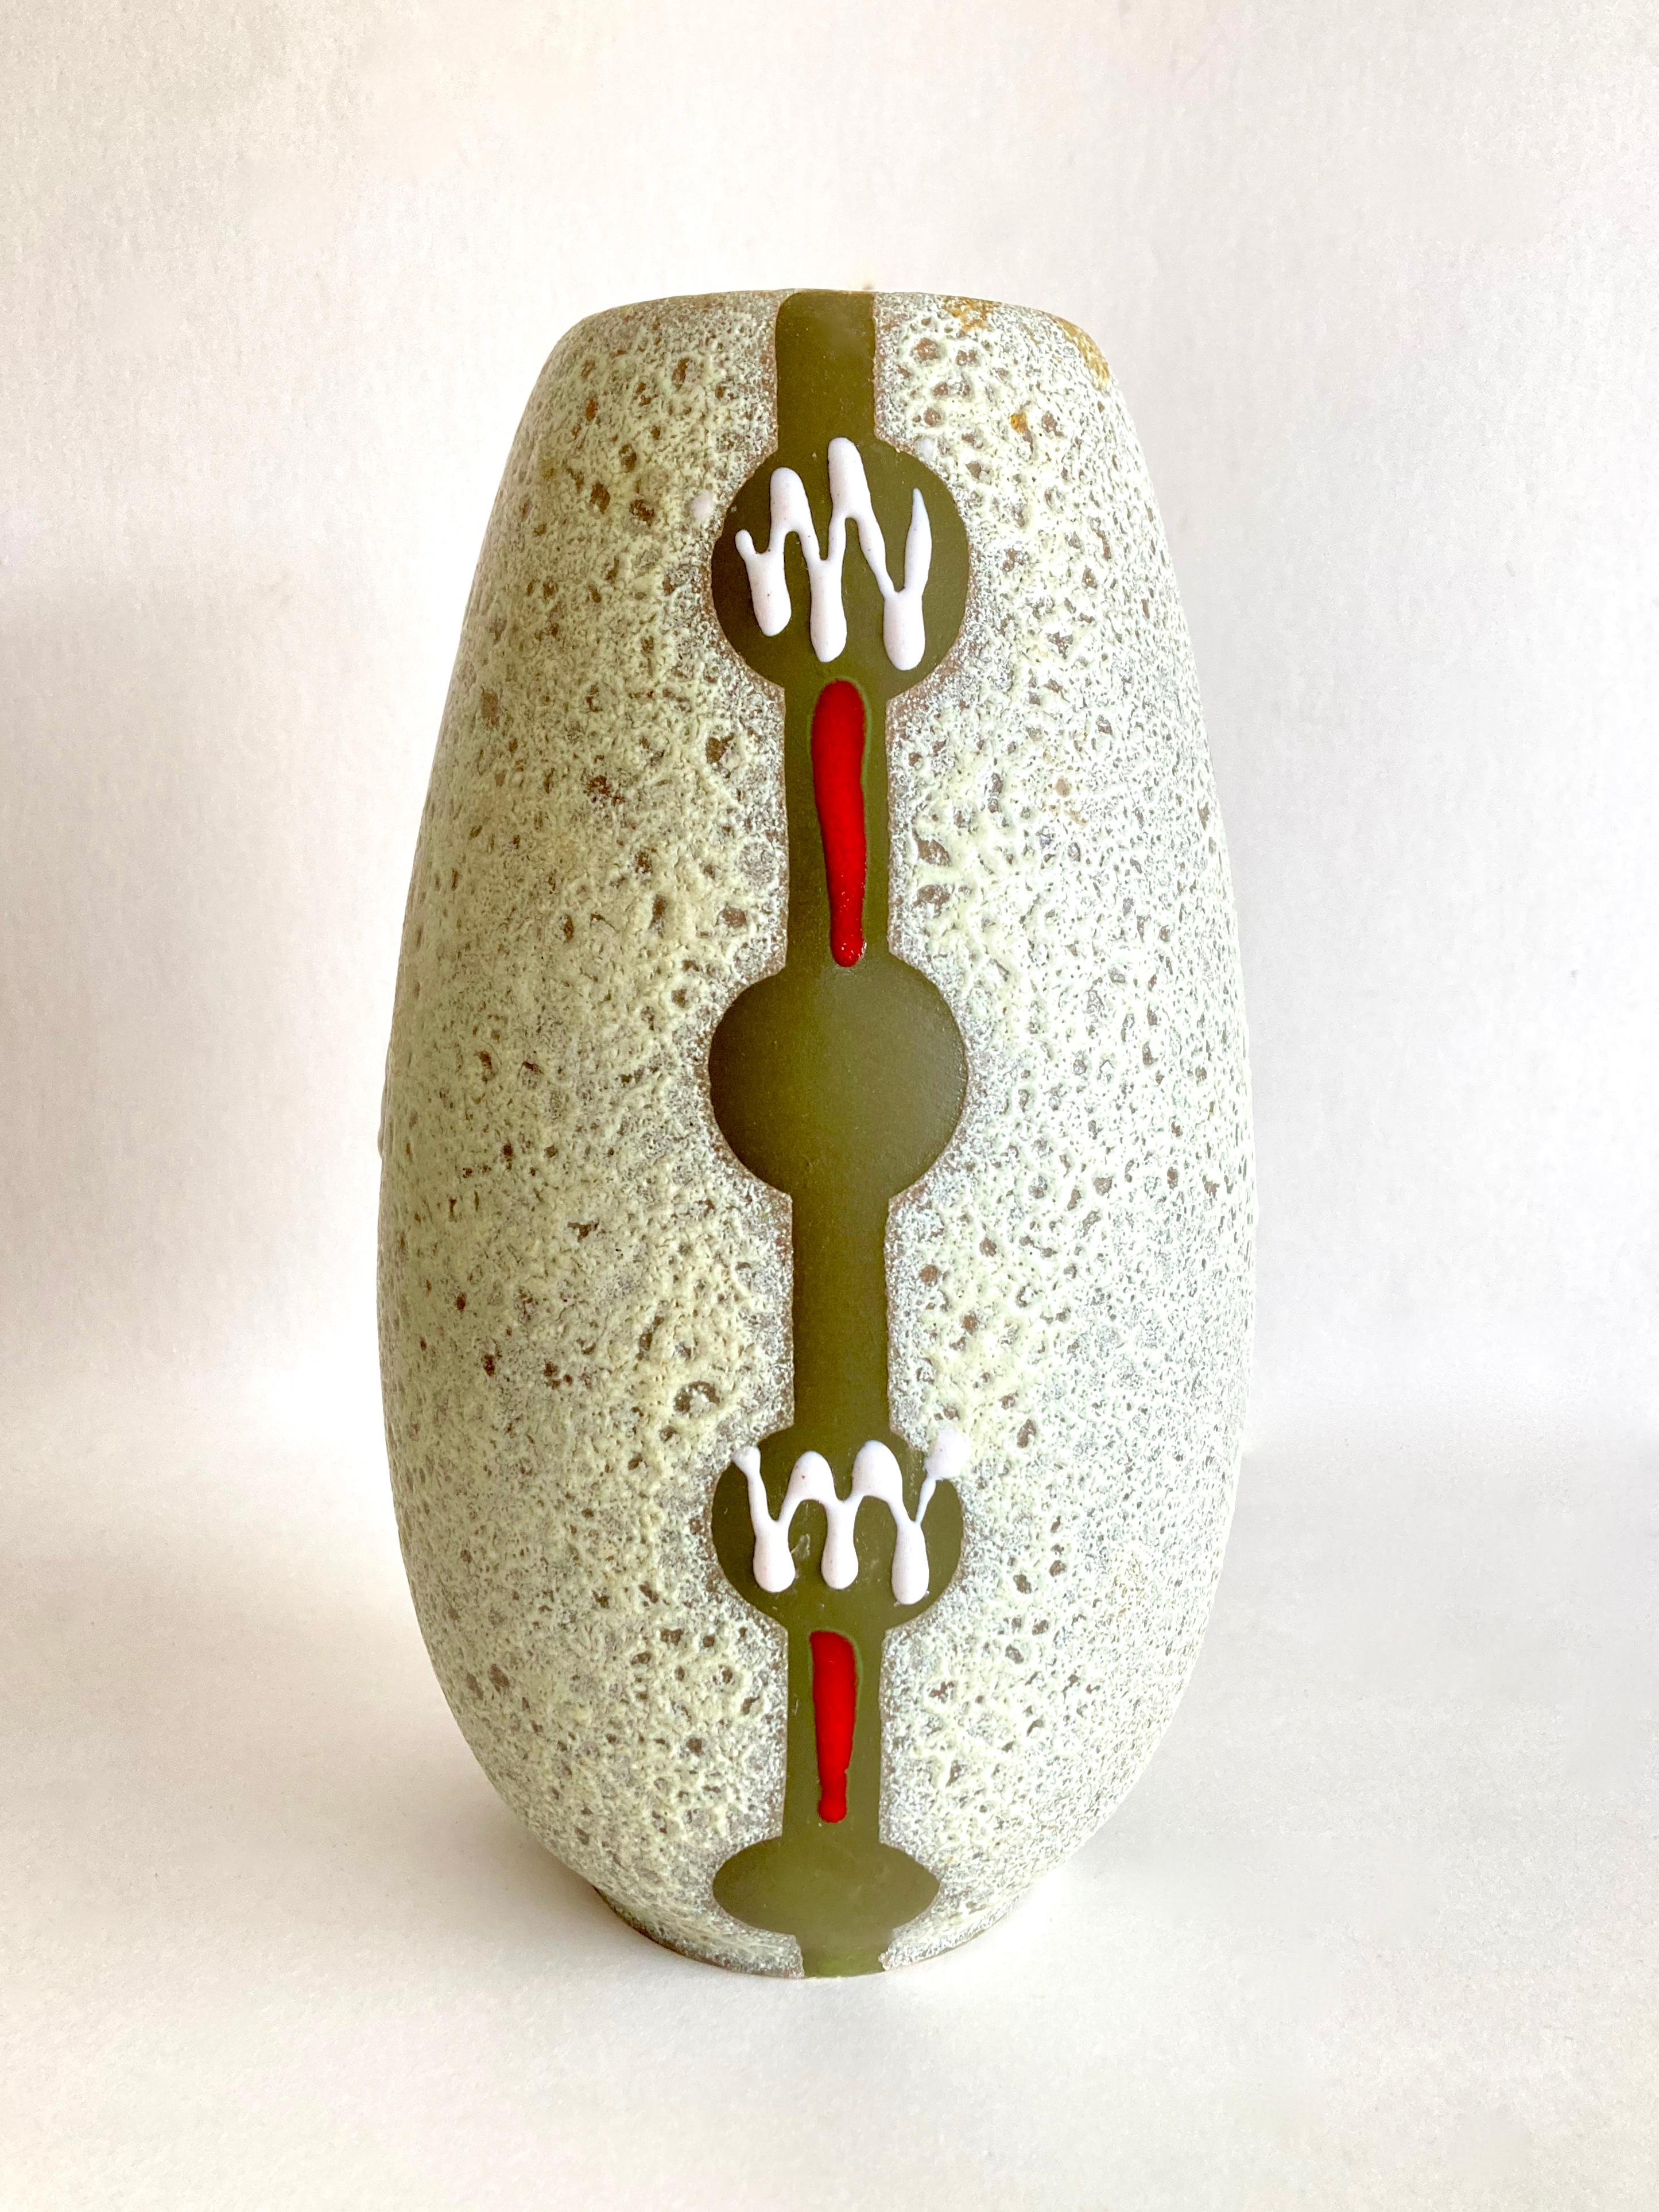 Un étonnant vase en lave grasse du milieu du siècle dernier, datant des années 1950, réalisé par le célèbre potier ouest-allemand Jasba Keramik. L'entreprise a été fondée en 1926 par Jakob Schwaderlapp à Ransbach-Baumbach et, jusqu'à sa disparition